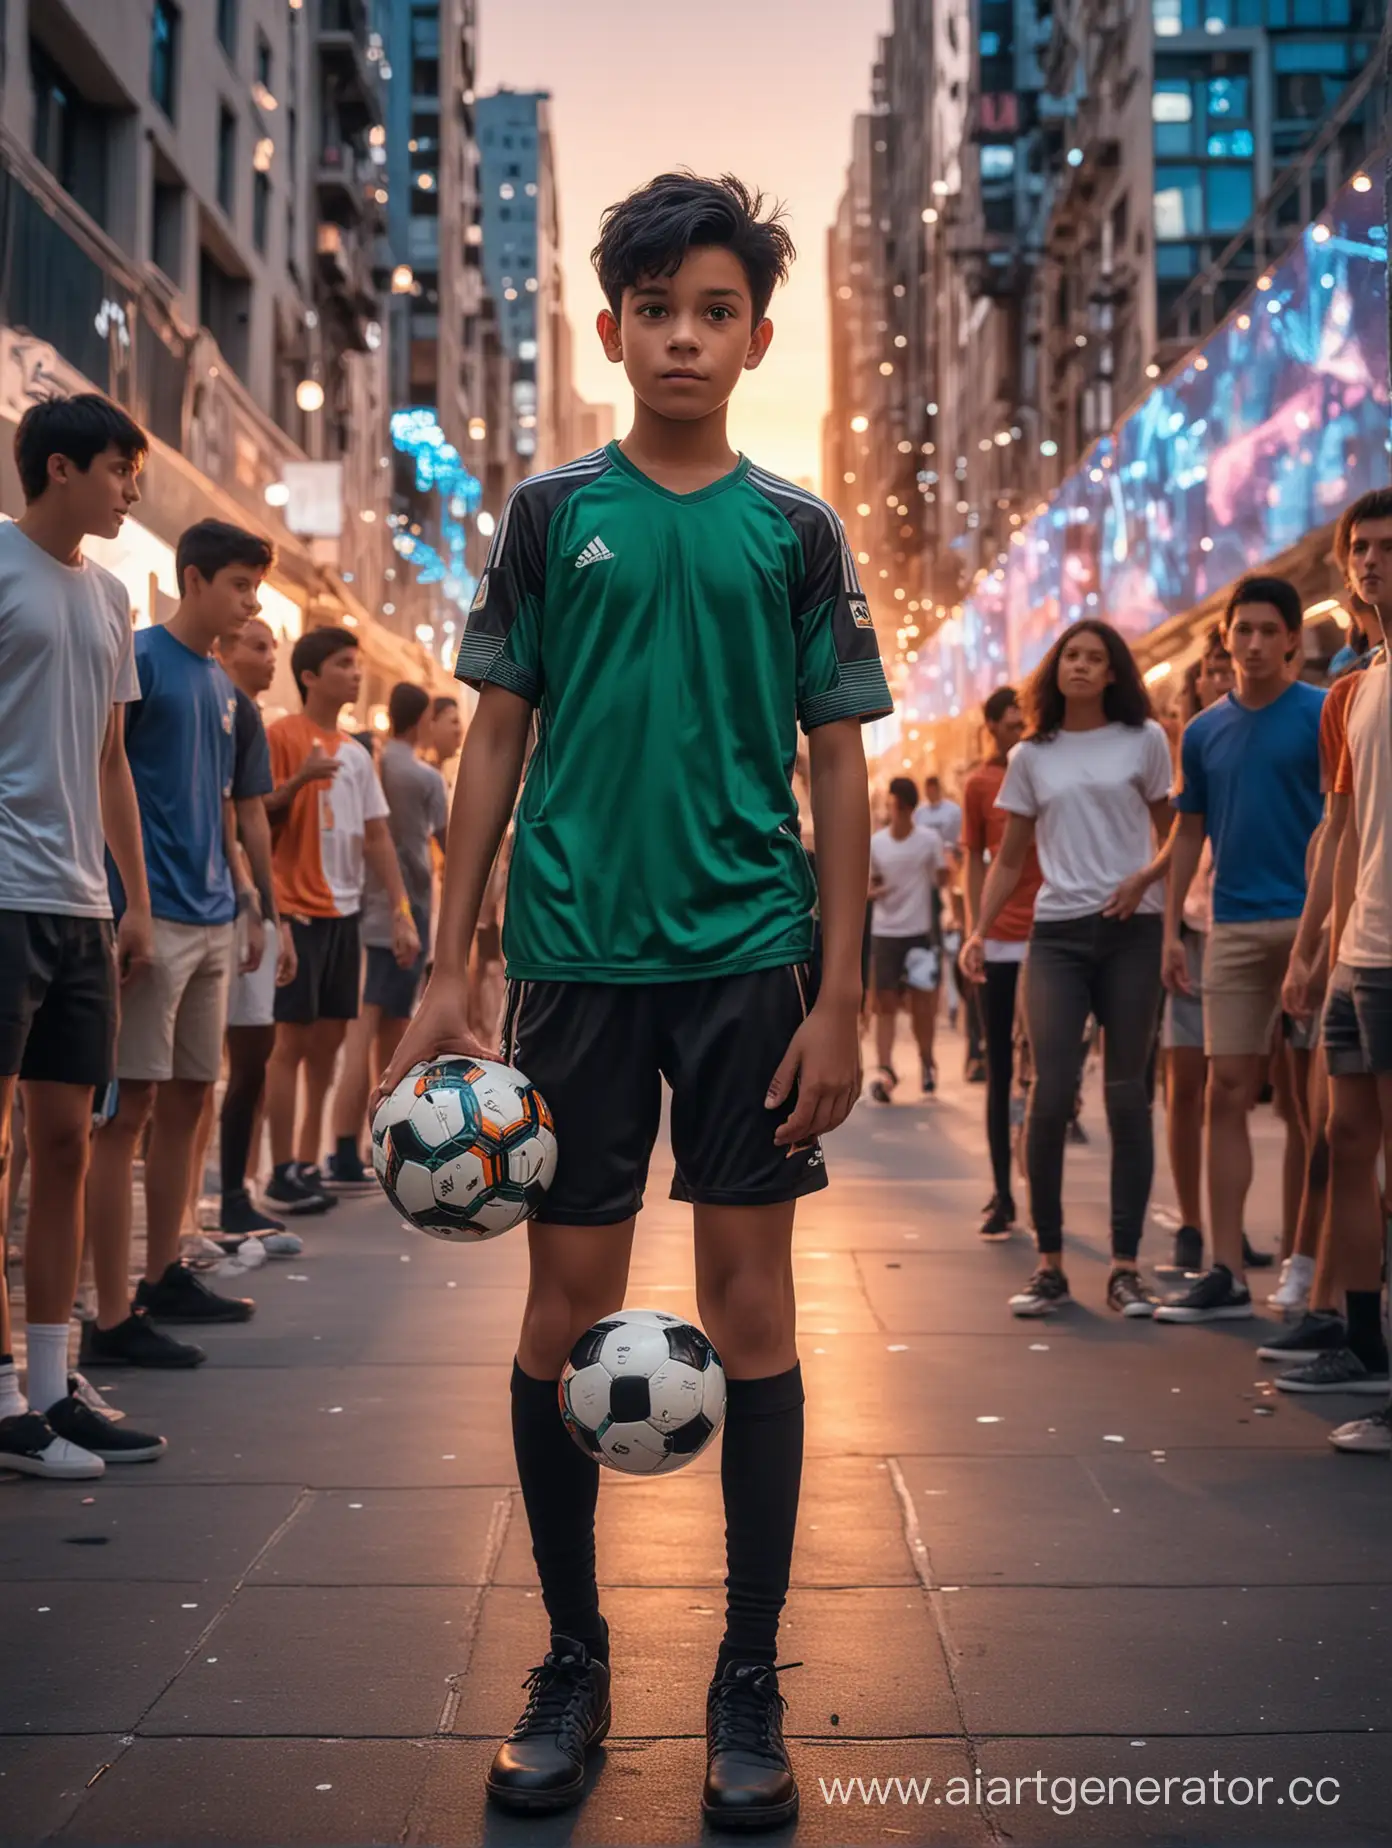 niño de 13 años de cabello negro sostiene su balon de futbol en el media de la gente que se le queda asombraada viendo su talento en el futbol en una ciudad futirista y llena de luces led en el atardecer y mucha tecnologia